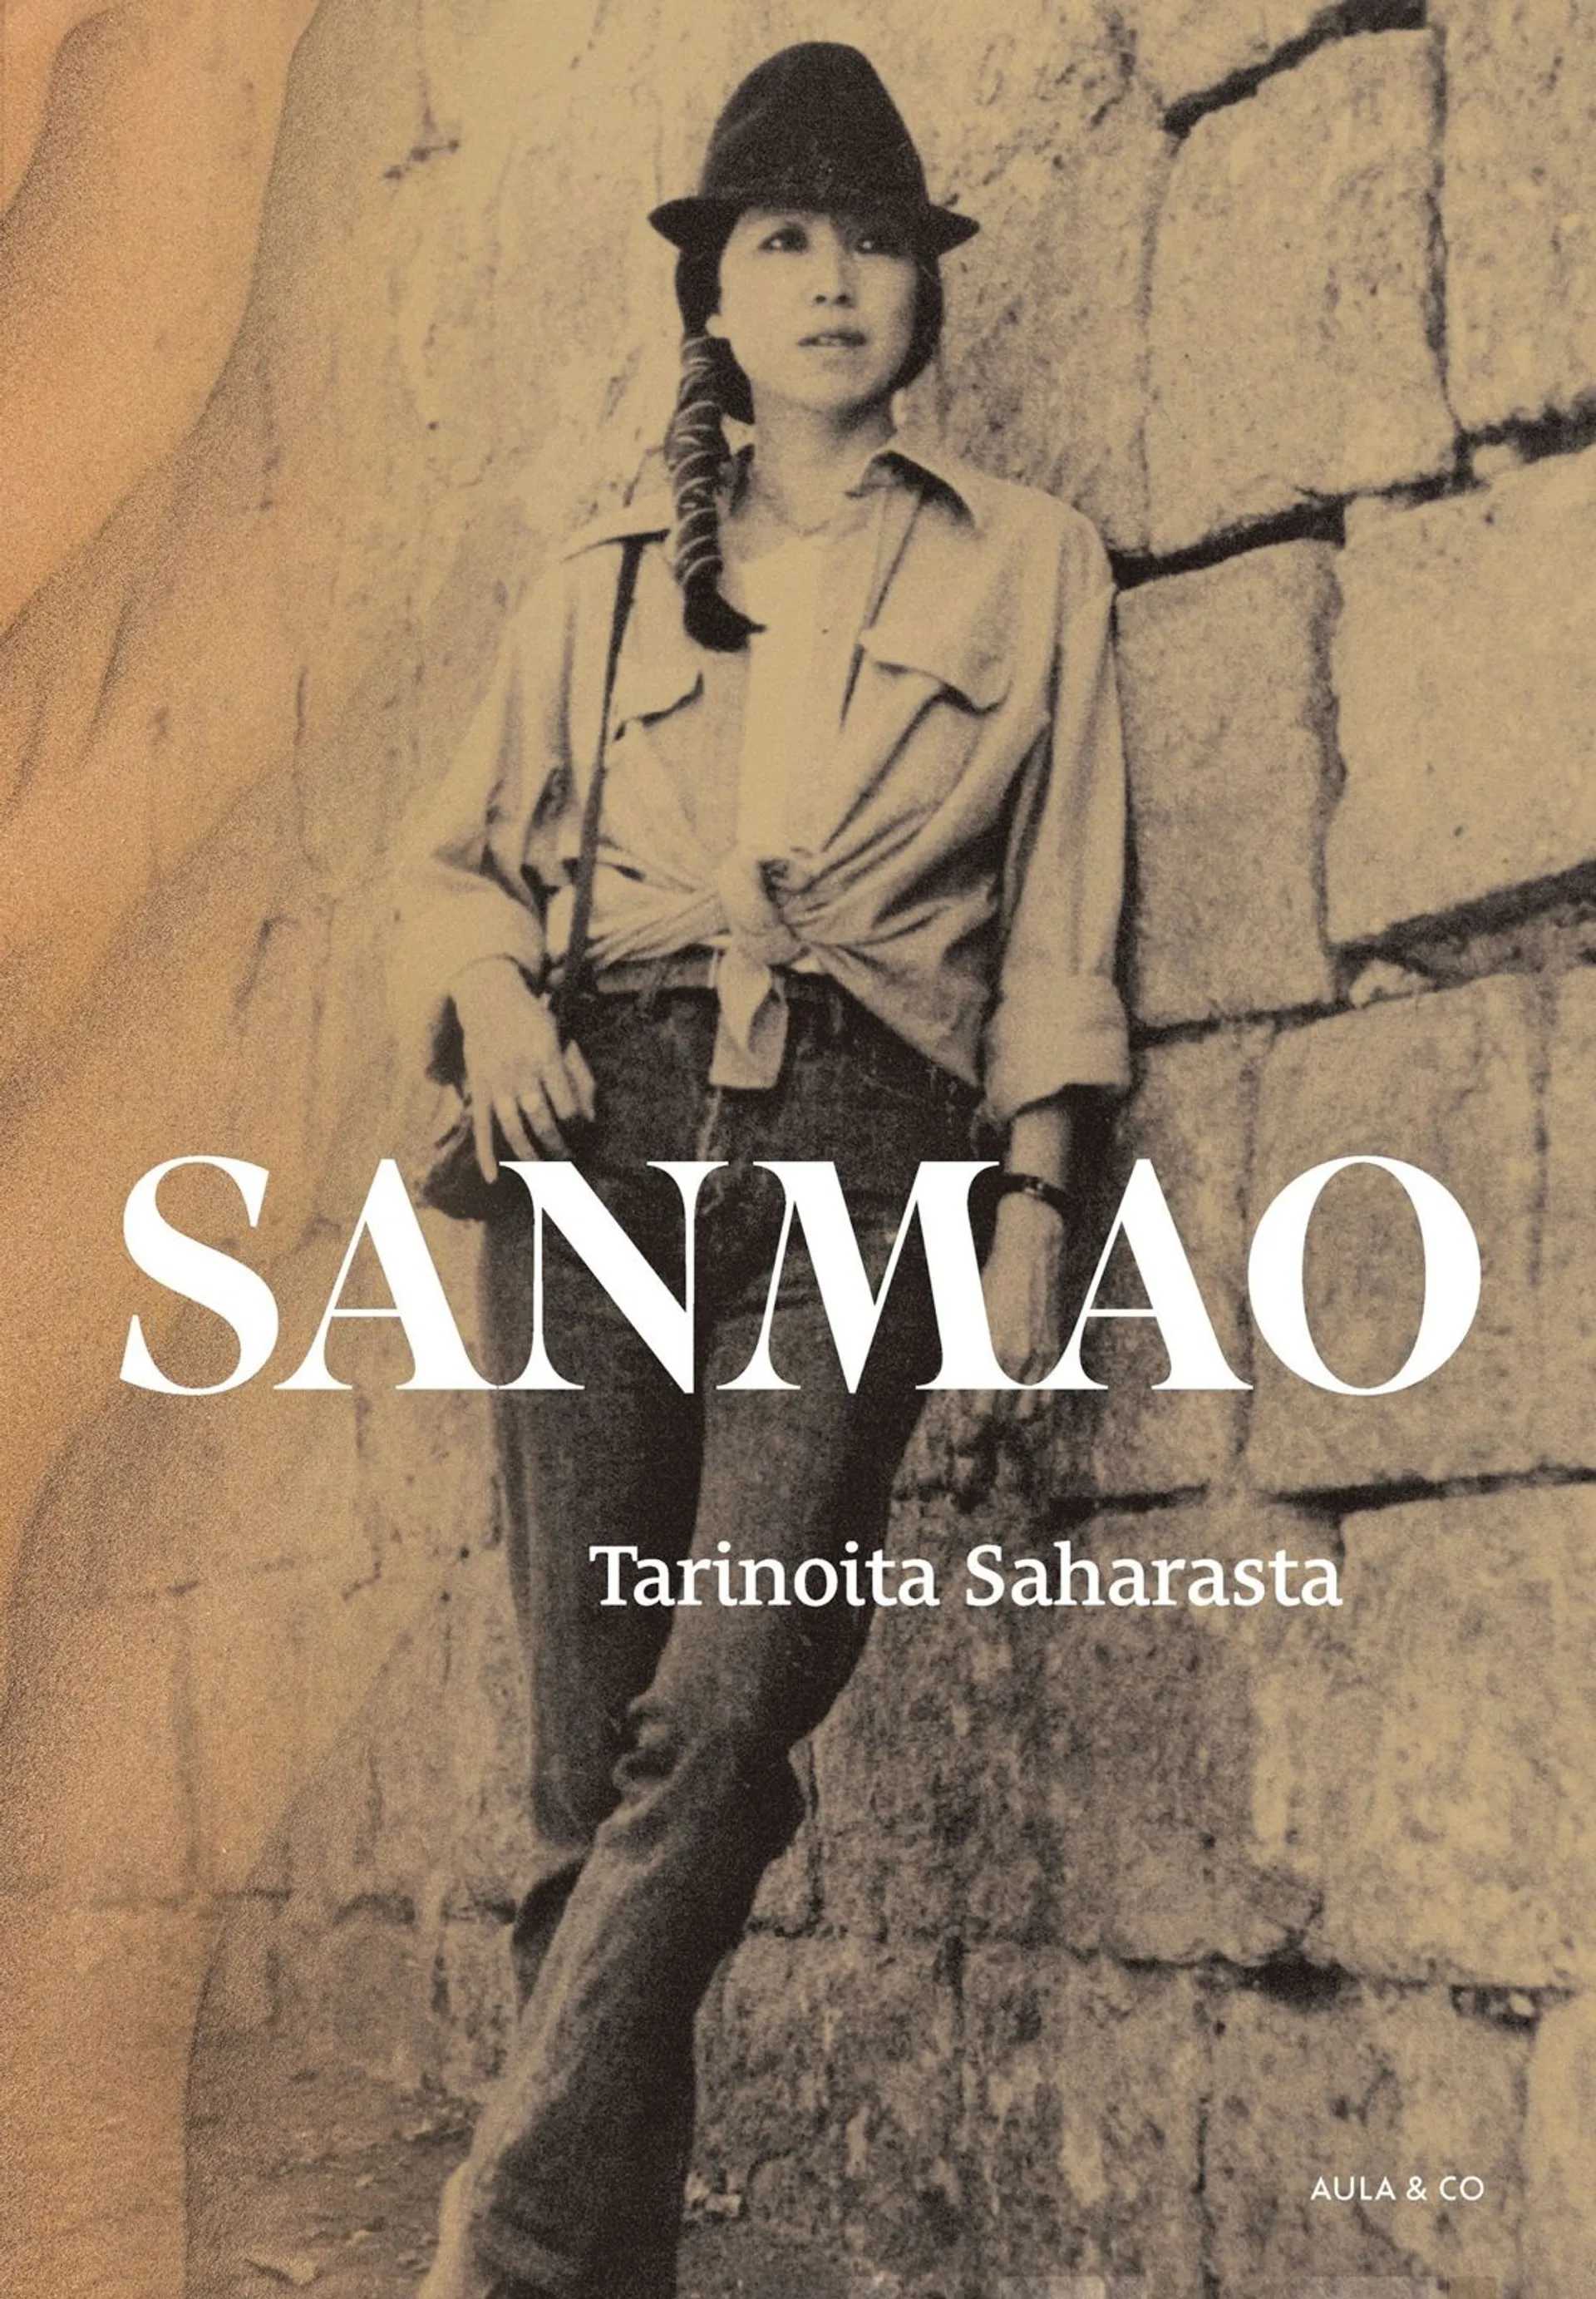 Sanmao, Tarinoita Saharasta